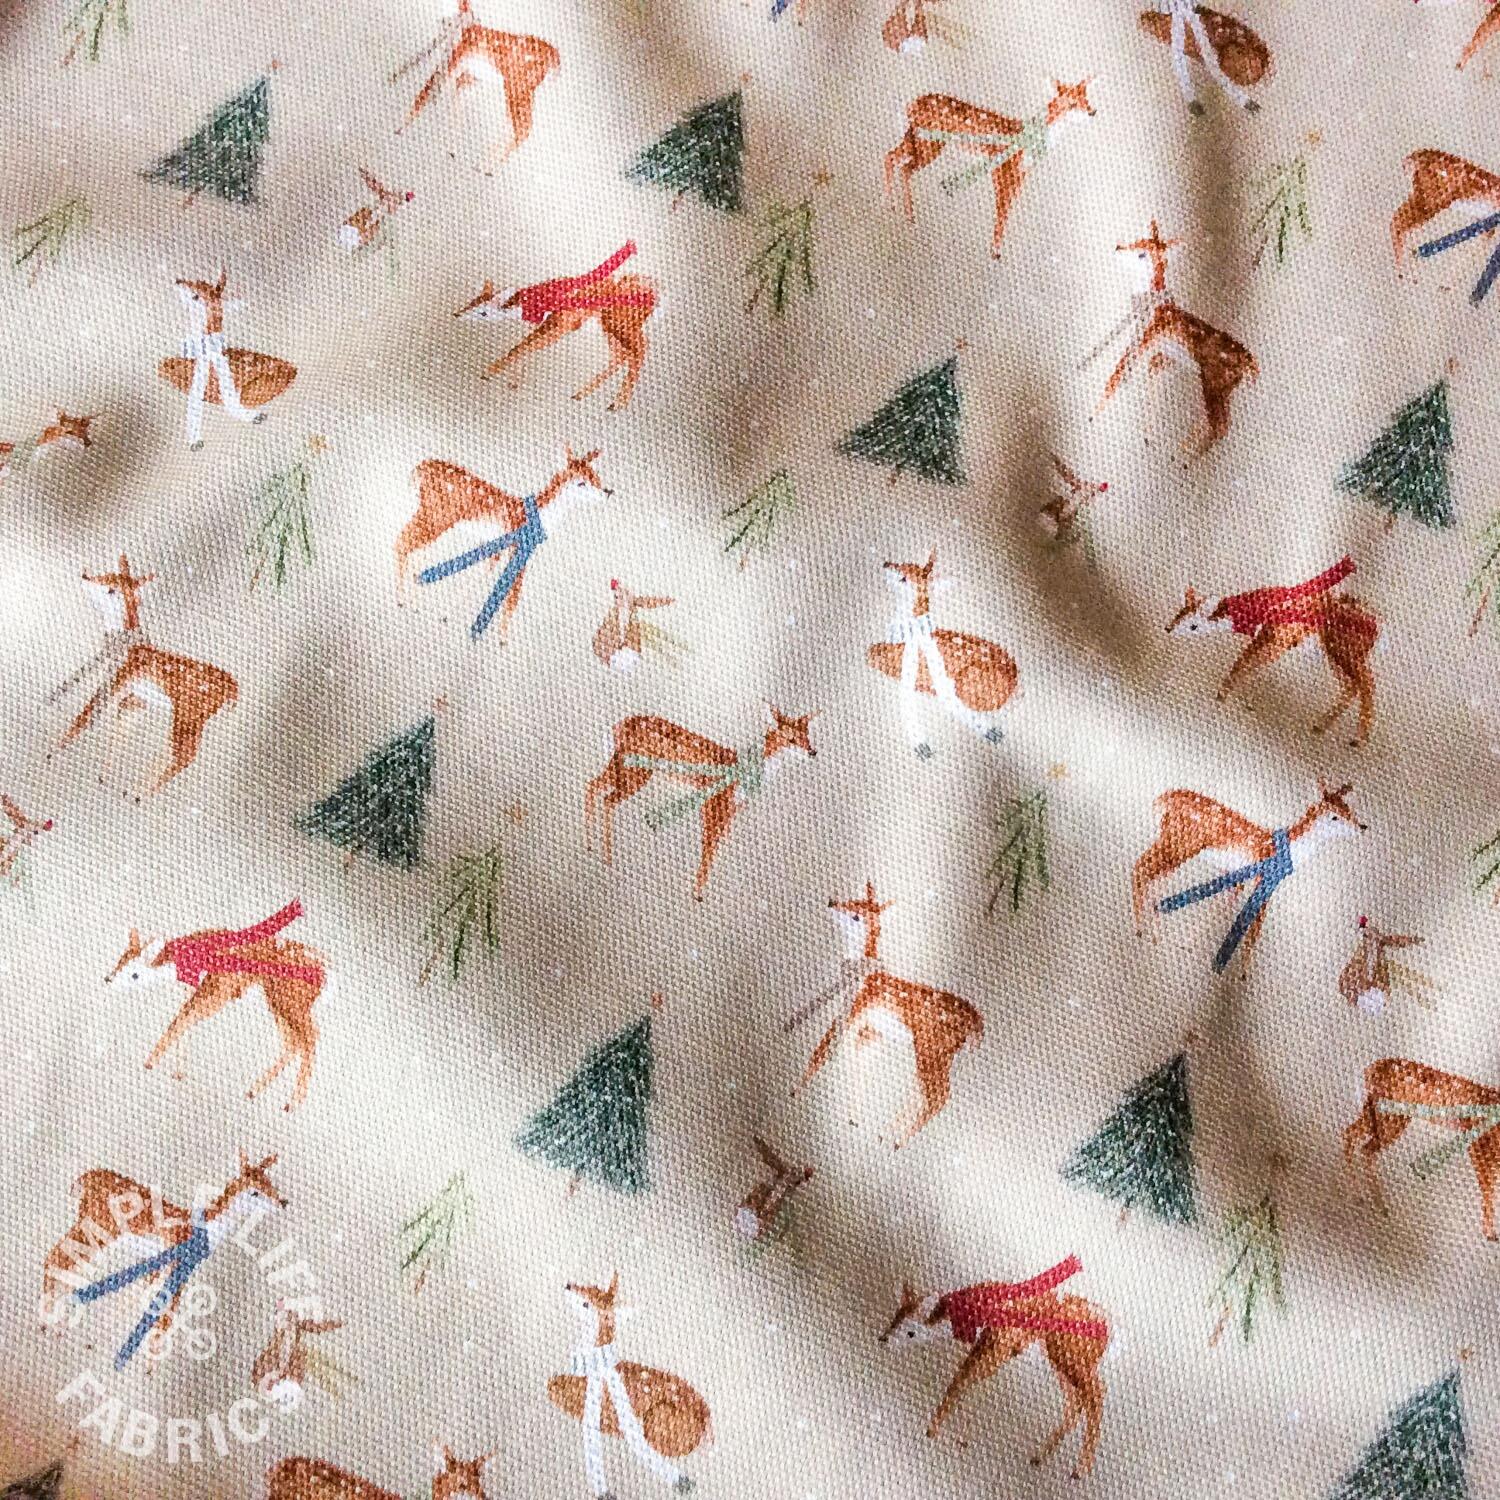 Christmas deer and bunnies fabric